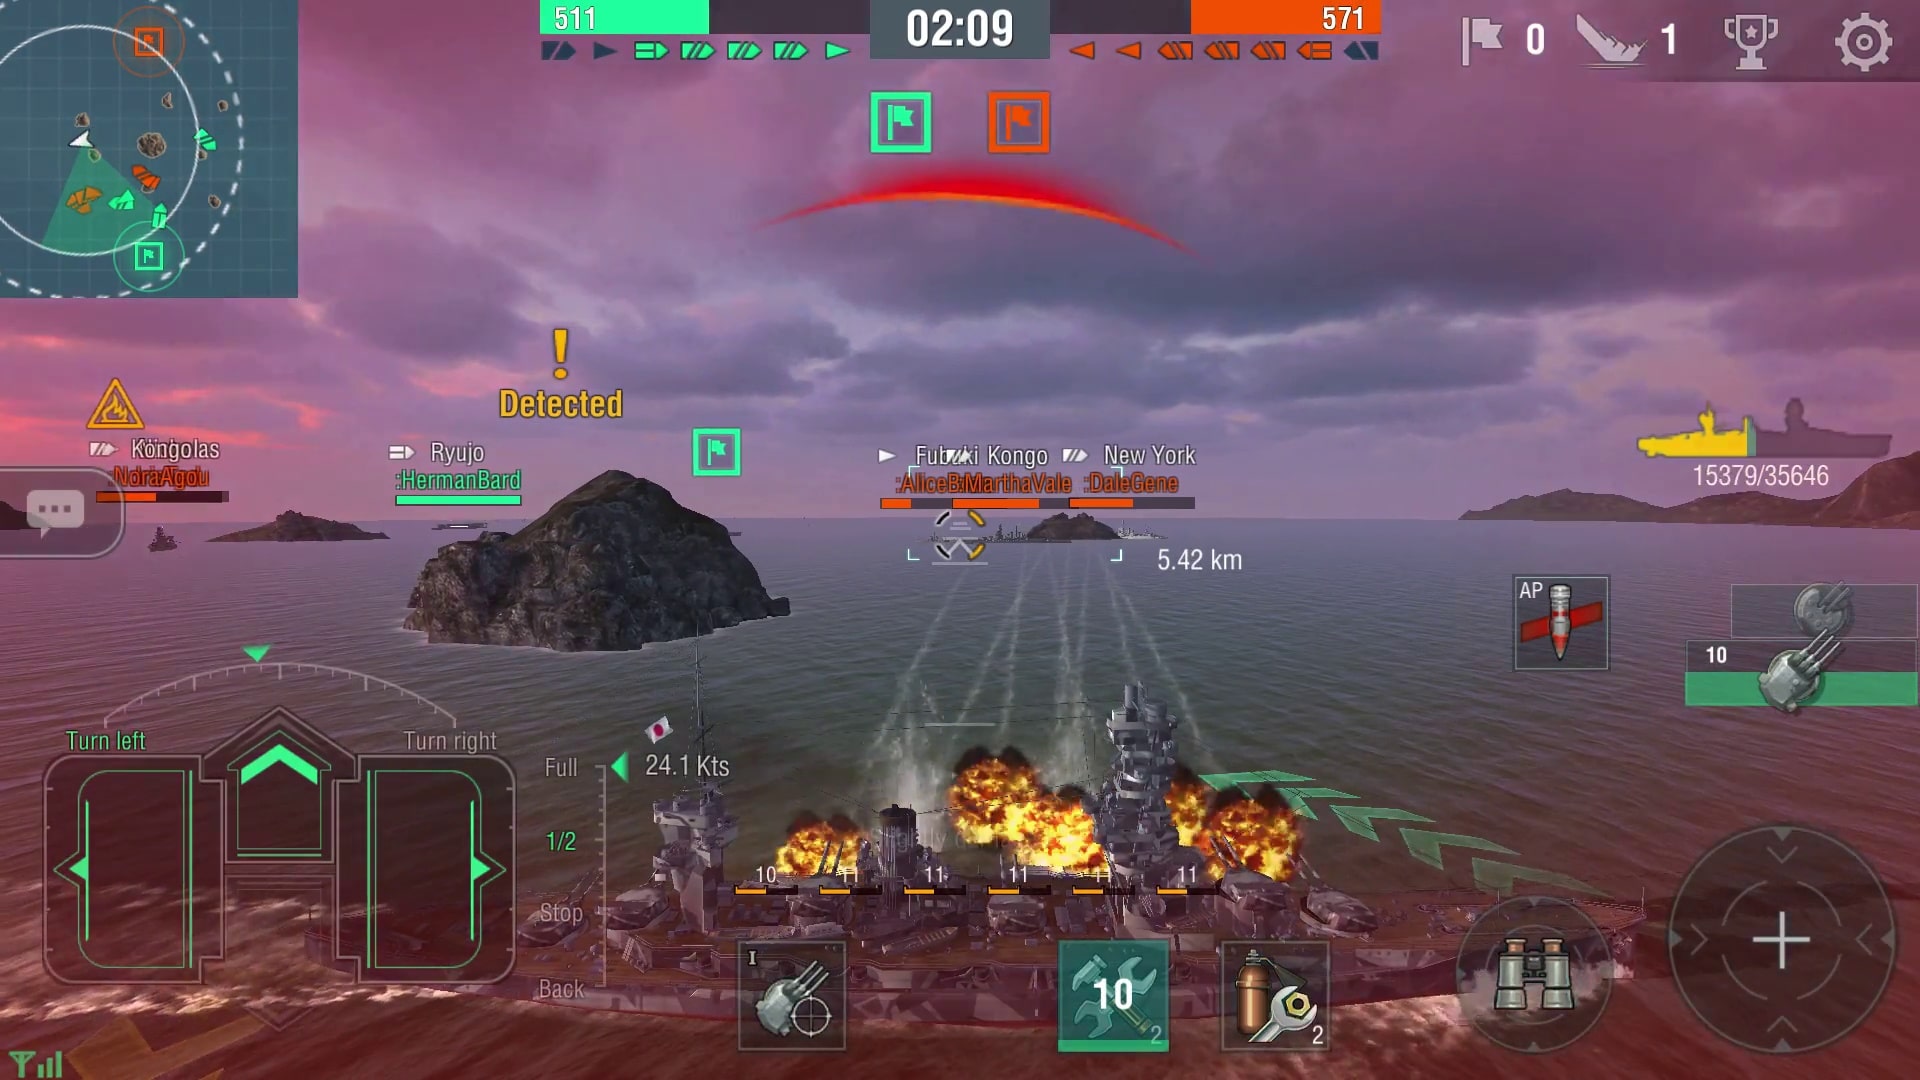 La variante Bliz dimagrita di World of Warships fa venire voglia a molti giocatori di passare al fratello maggiore per PC in seguito.